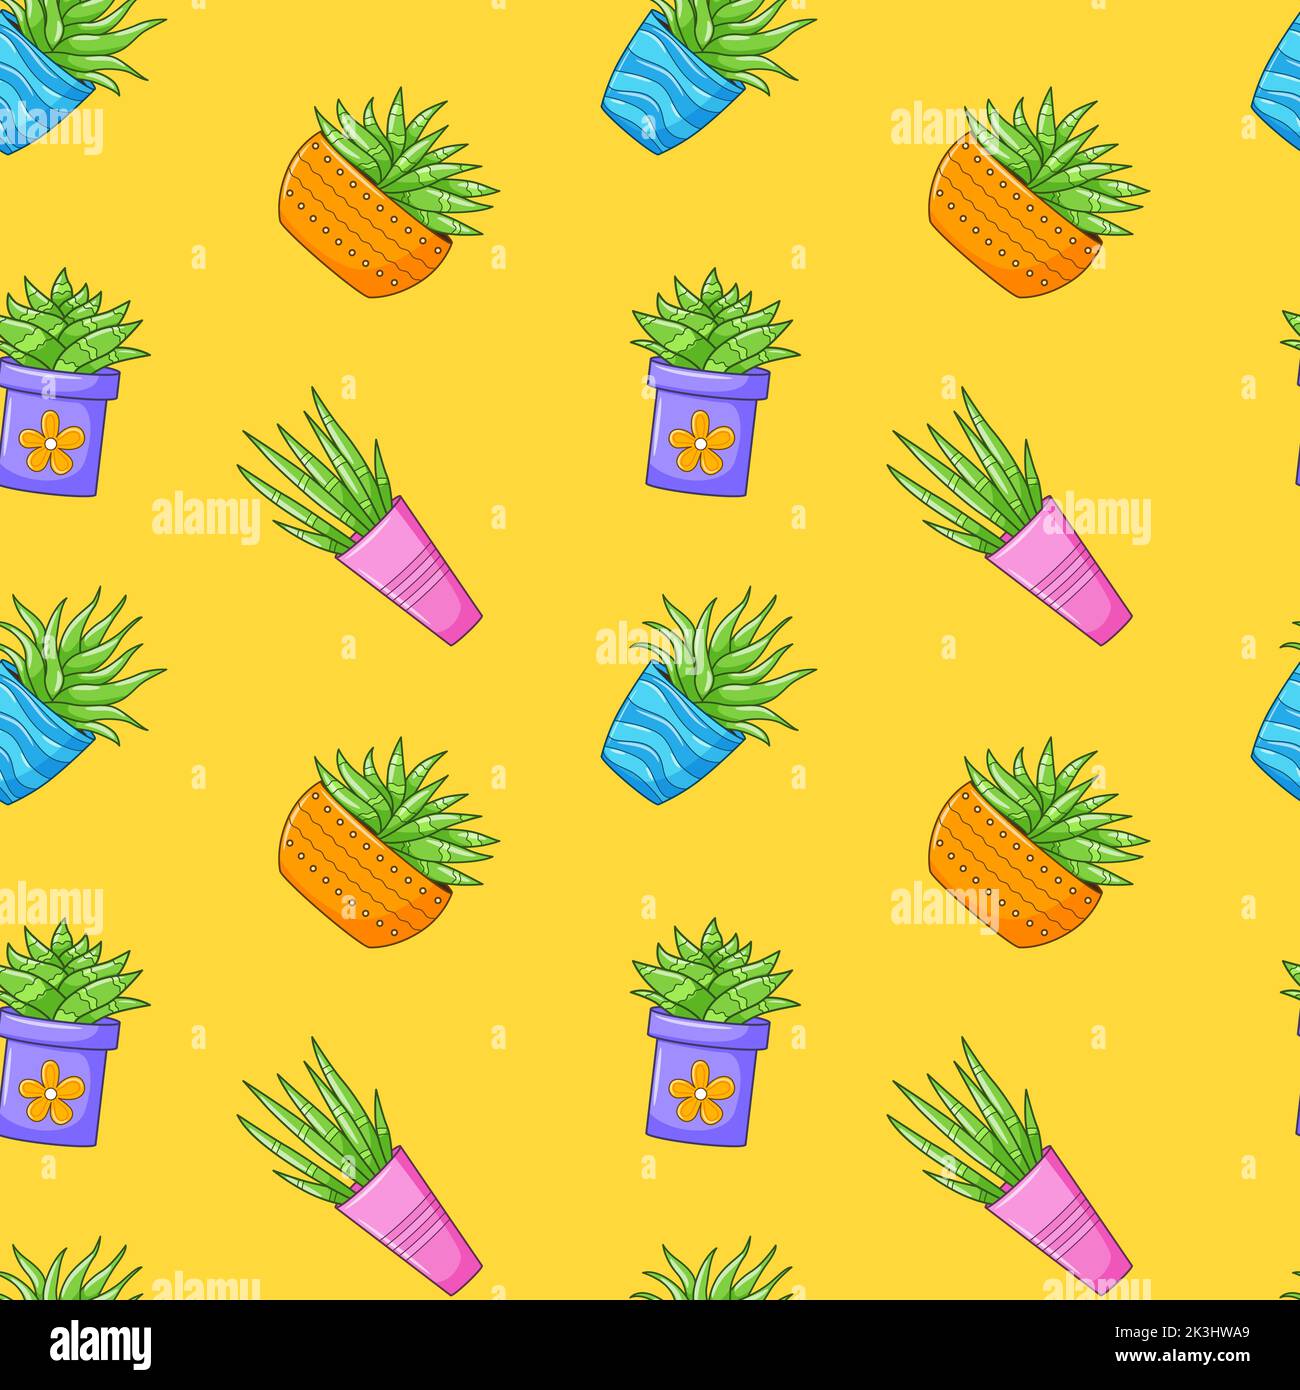 Nahtloses Muster mit verschiedenen Kaktus, Sukkulente Pflanze in hellen Blumentopf. Cartoon Kakteen. Handzeichnung Hintergrund mit Zimmerpflanzen. Vektorgrafik Stock Vektor